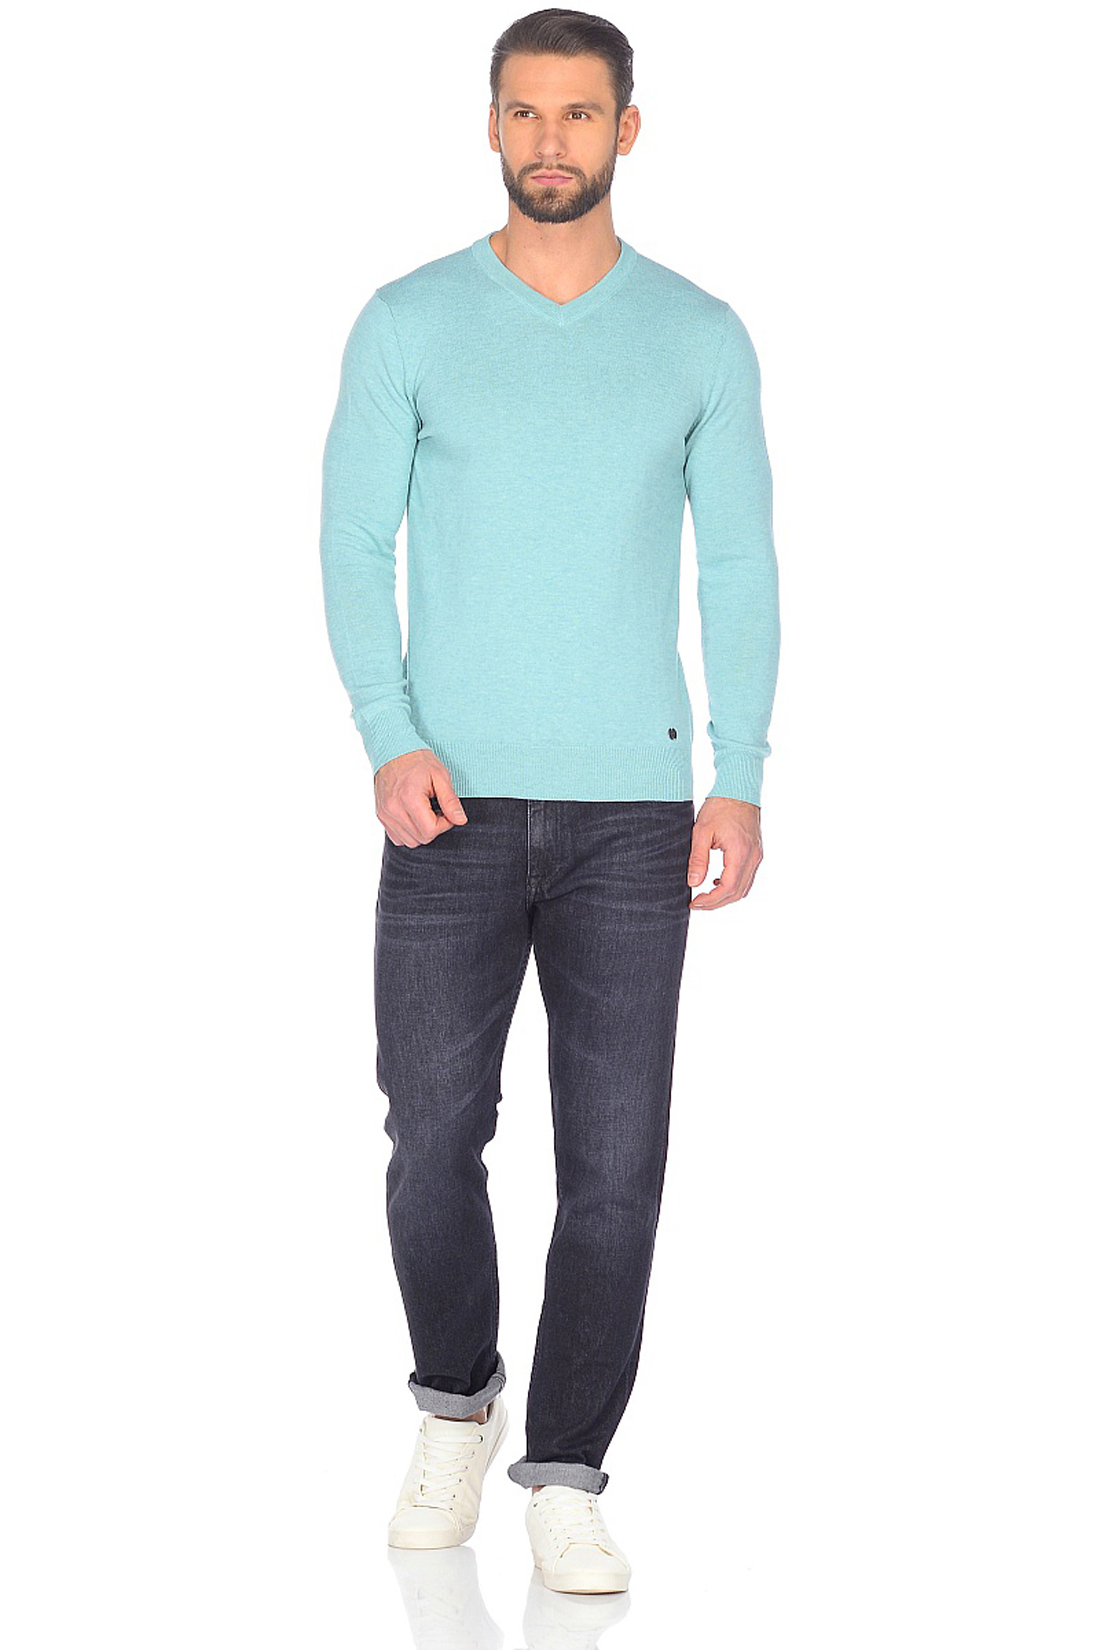 Базовый пуловер (арт. baon B638202), размер XXL, цвет зеленый Базовый пуловер (арт. baon B638202) - фото 3